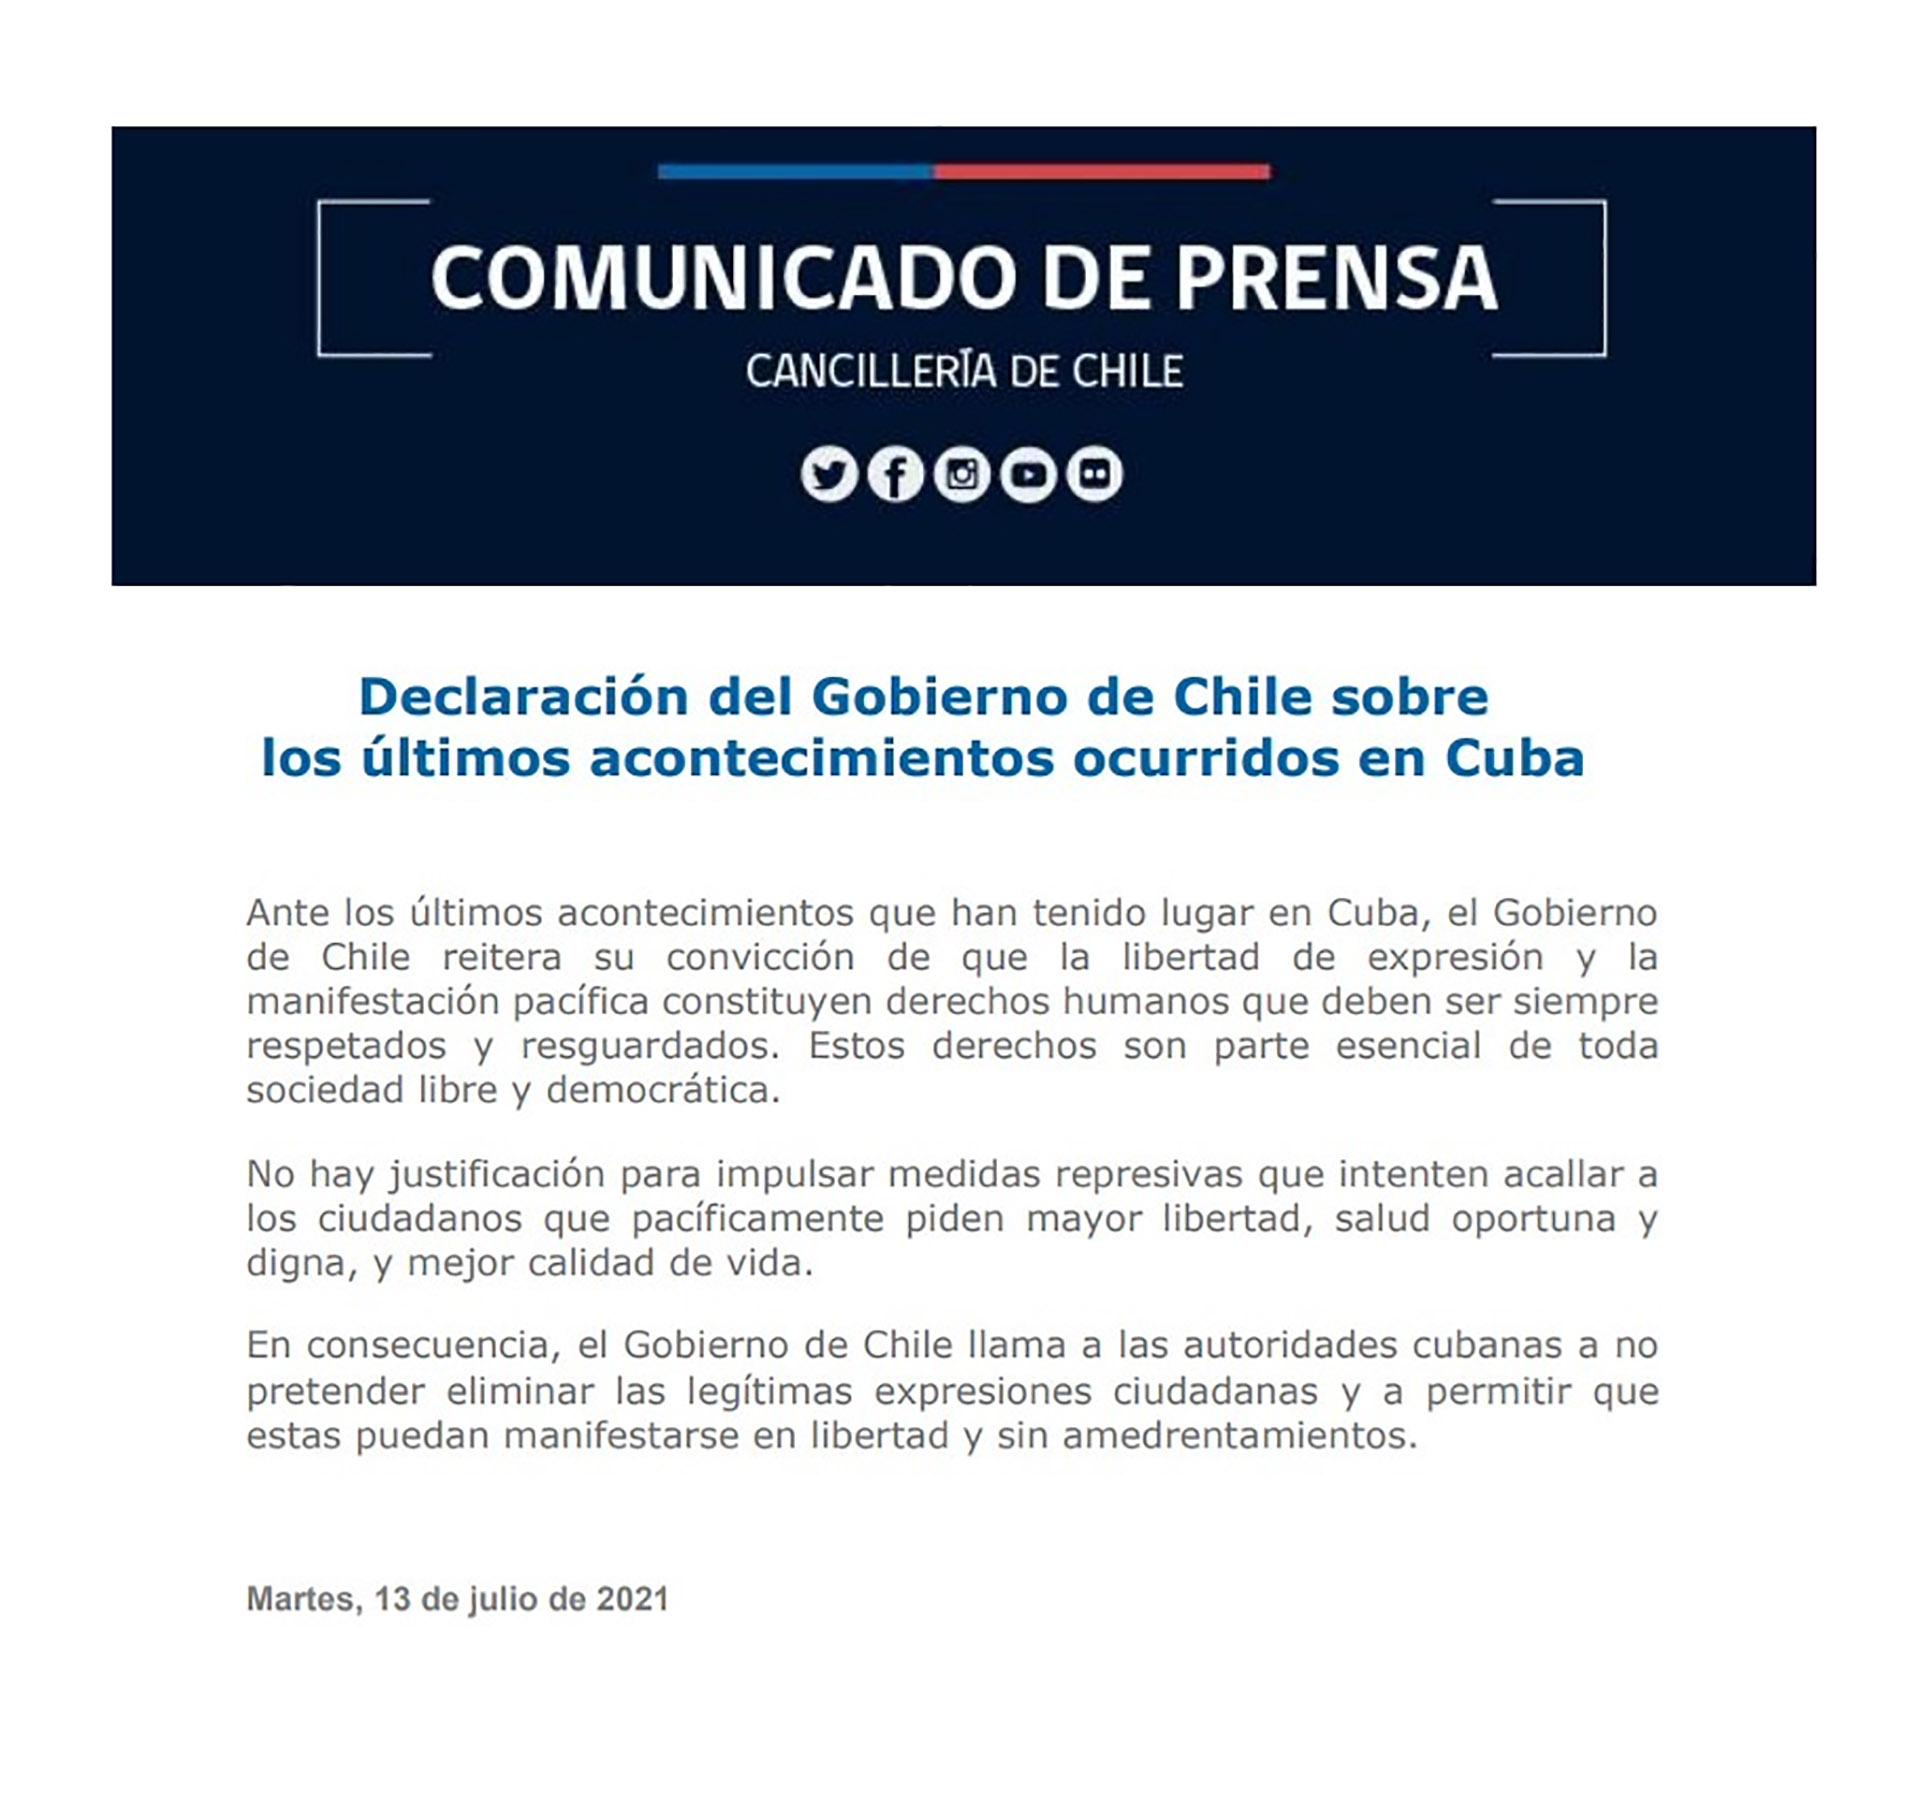 El comunicado de prensa emitido por la Cancillería de Chile 